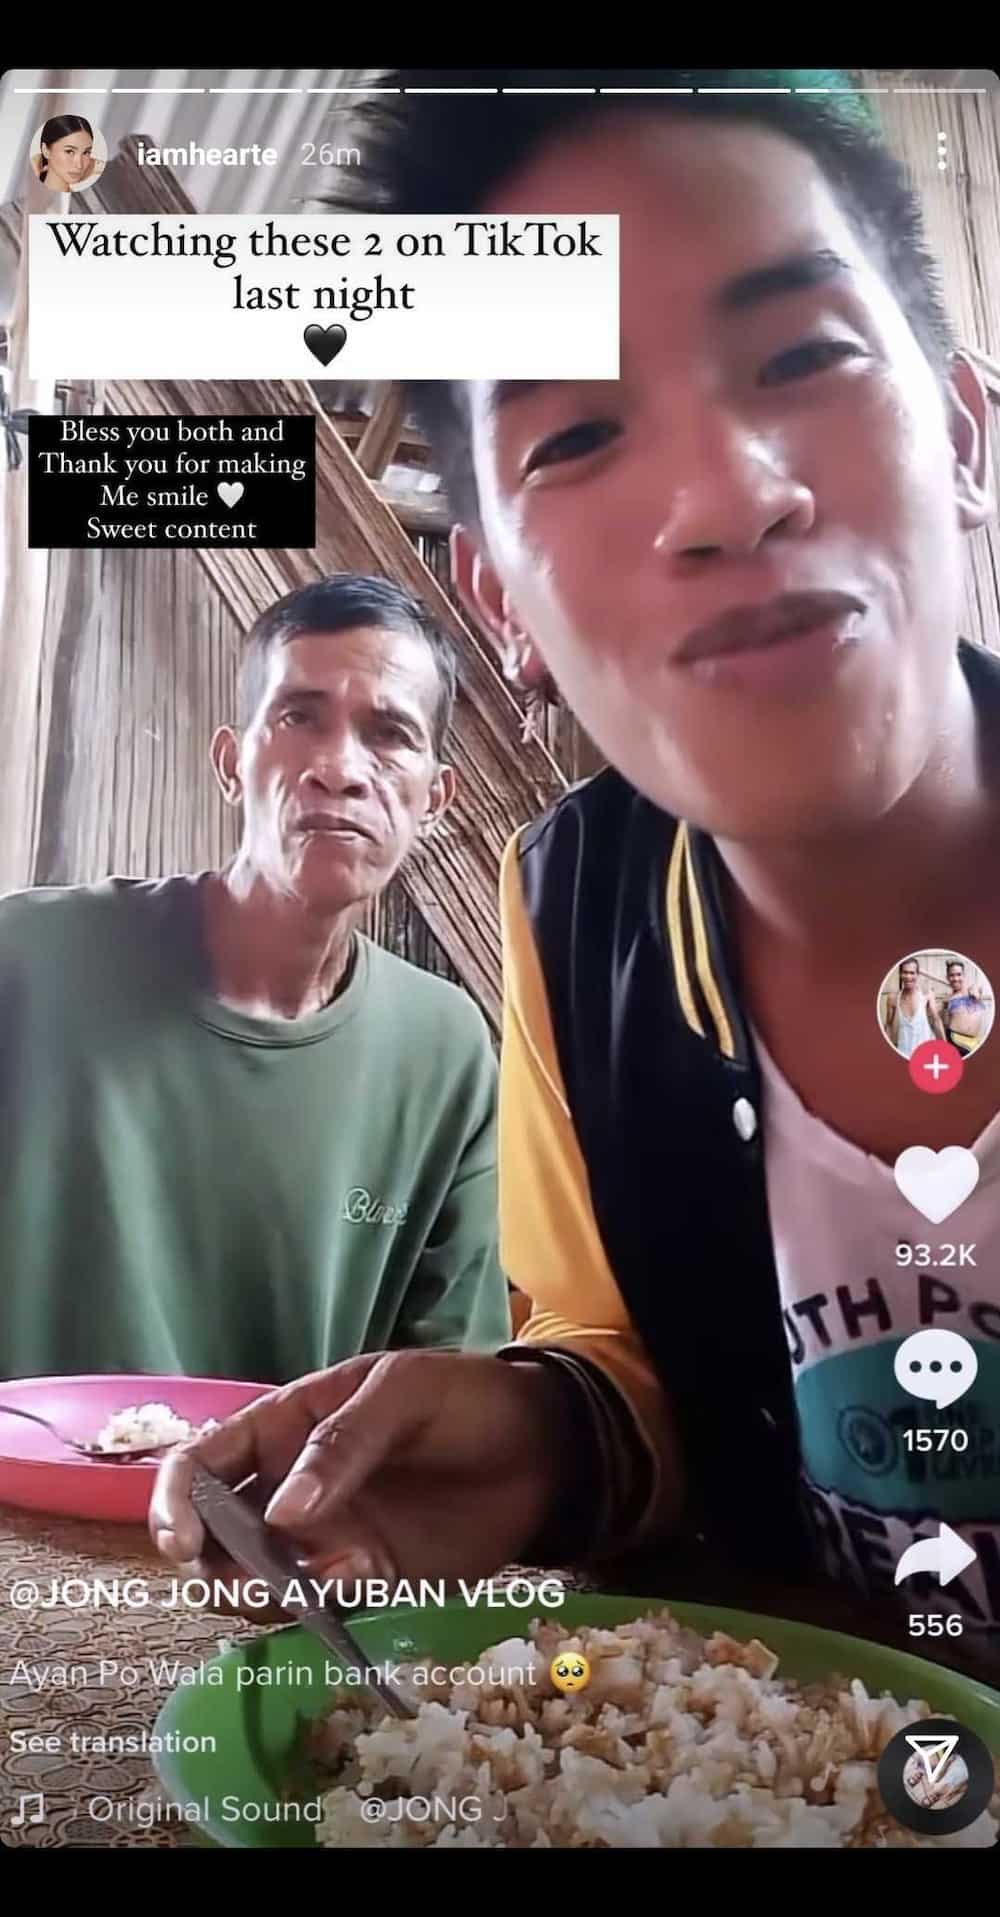 Heart Evangelista, kinagiliwan ang mga videos ng mag-amang nag-viral sa TikTok